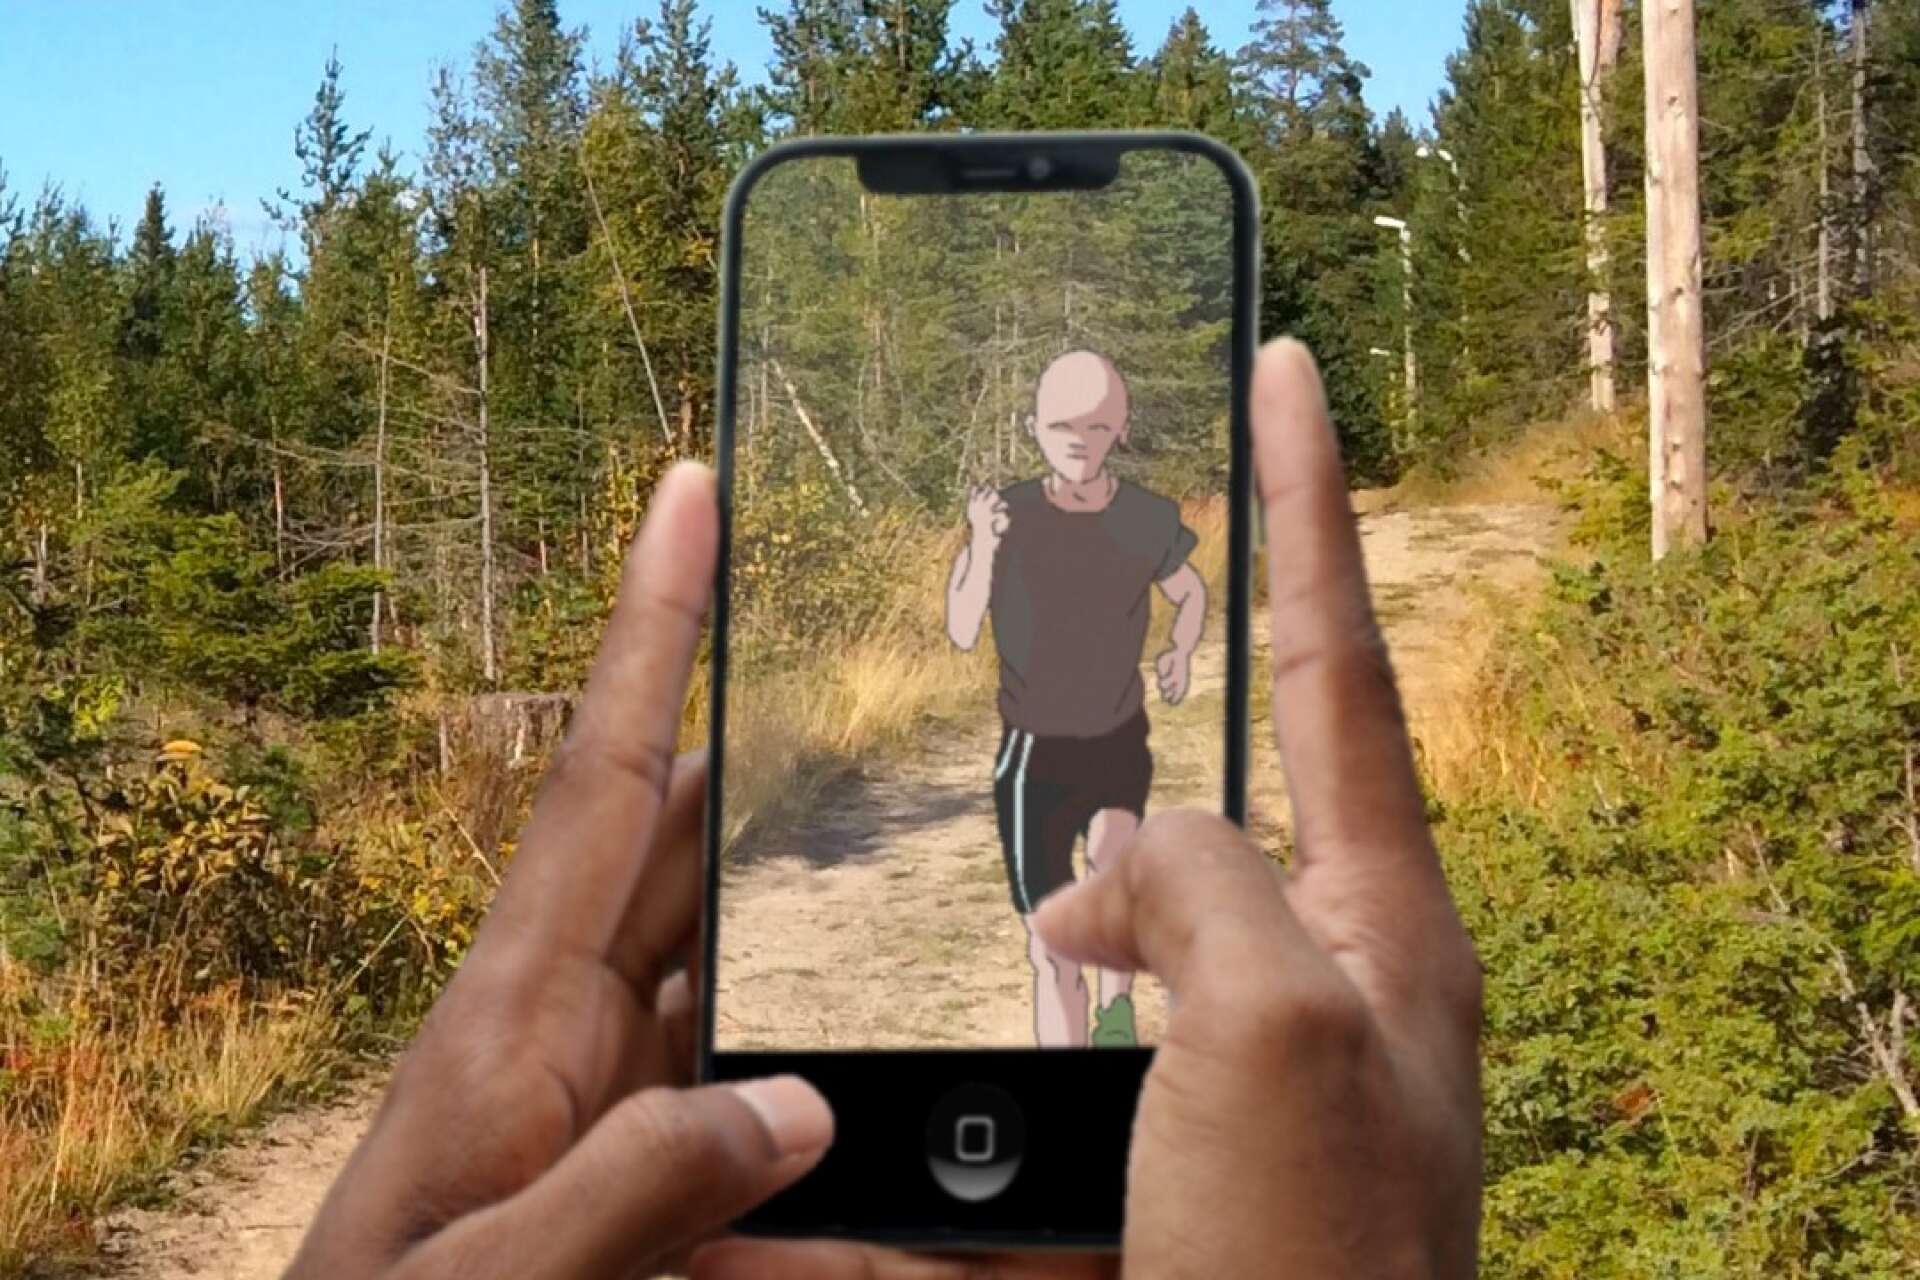 Så här kan det se ut på skärmen: en joggare uppenbarar sig framför dig, och i samma miljö som du själv står i.